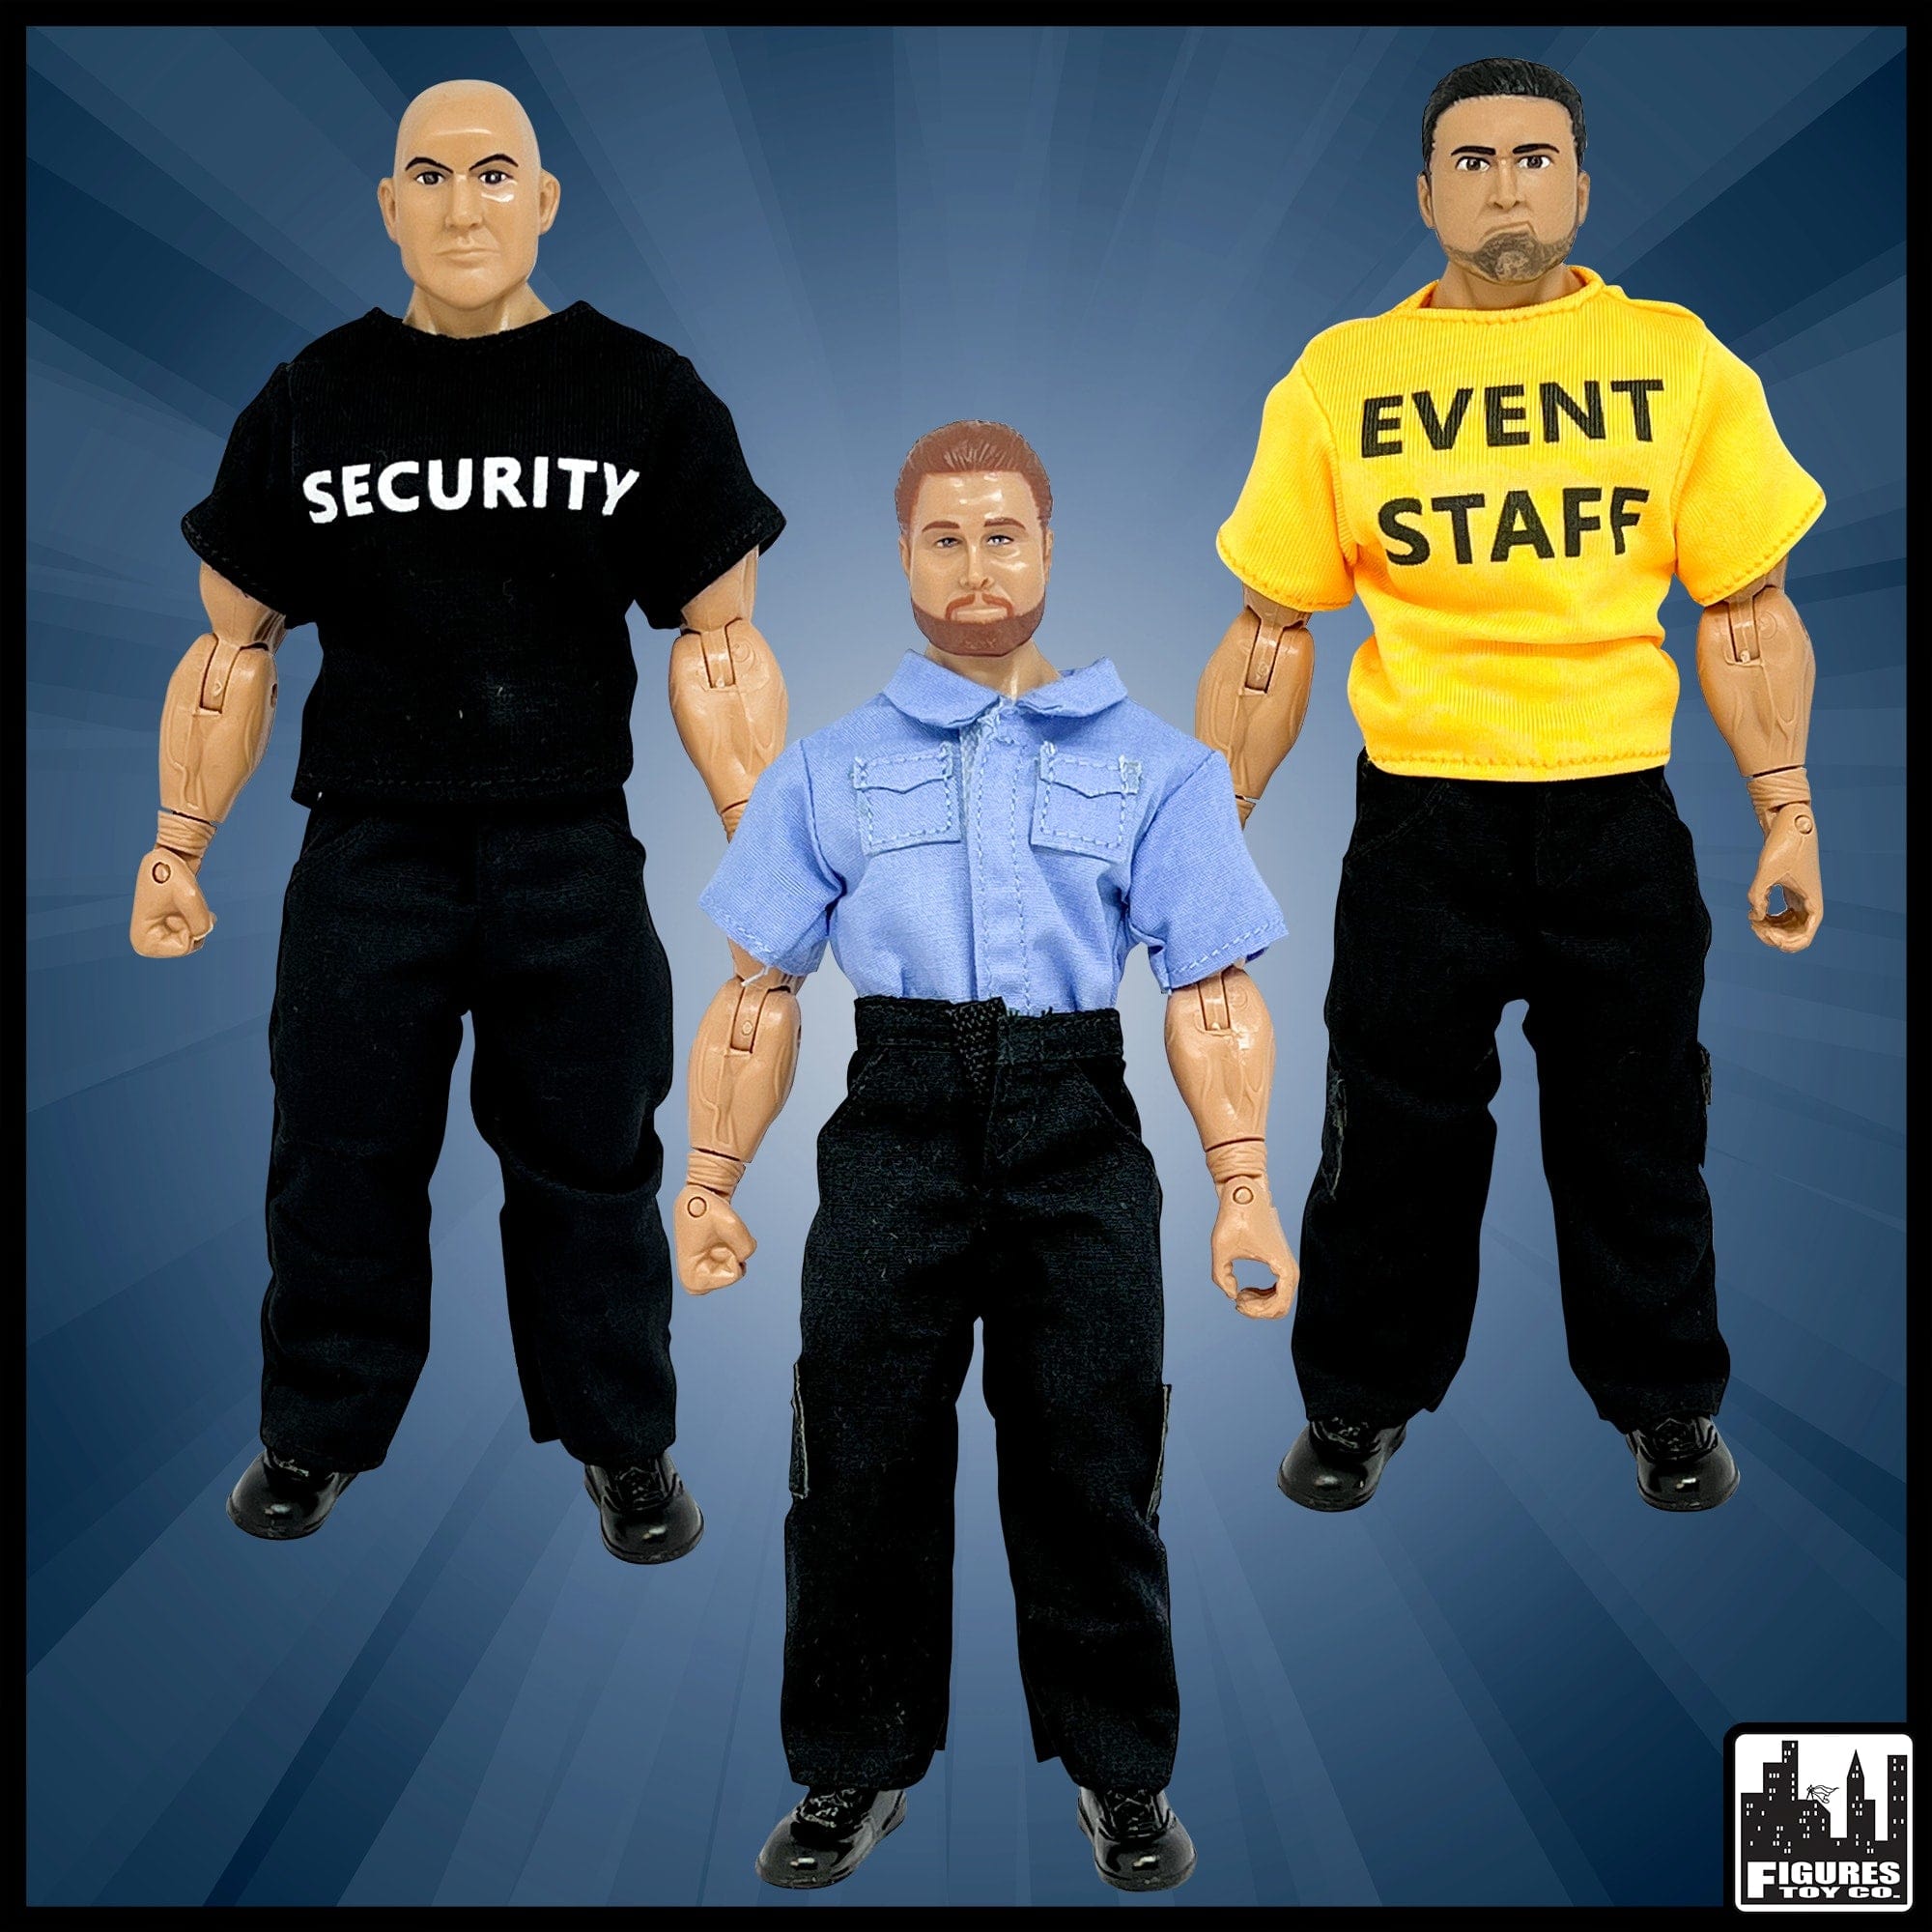 Security Guard, Event Staff Worker & EMT Action Figure for WWE Wrestling Figures